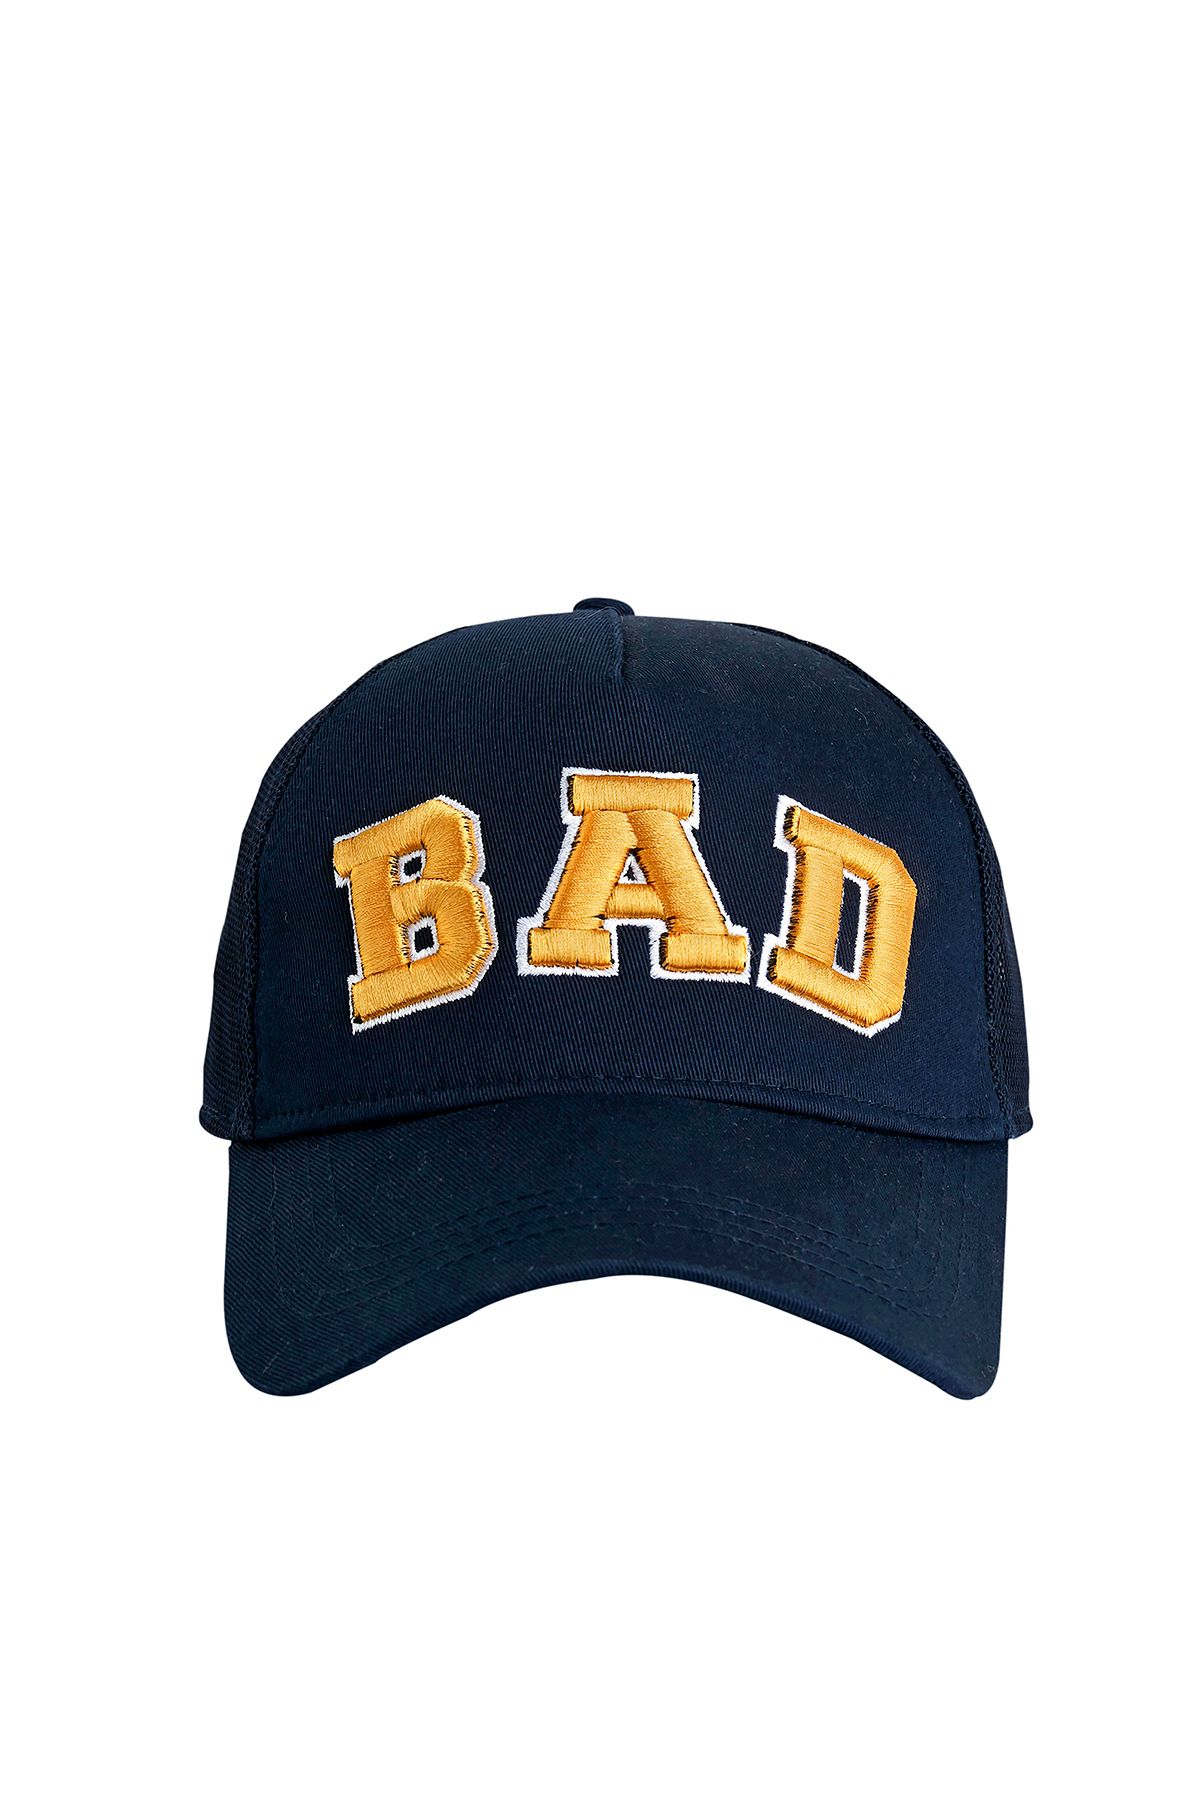 Bad Bear Bad Cap Lacivert Unisex Şapka